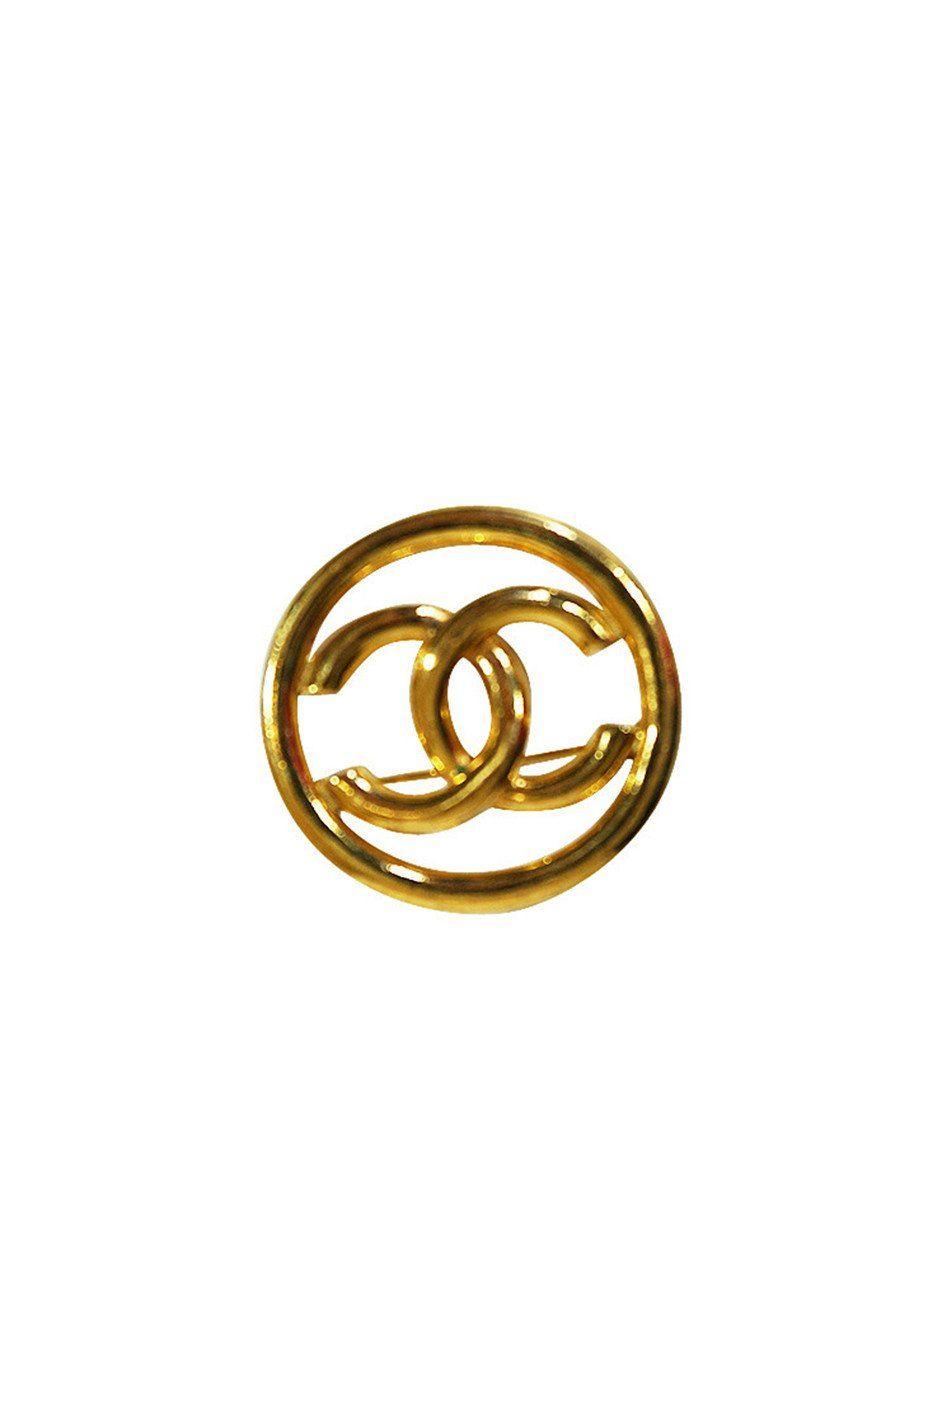 Golden Chanel Logo - Vintage Gold Tone Chanel Logo Brooch